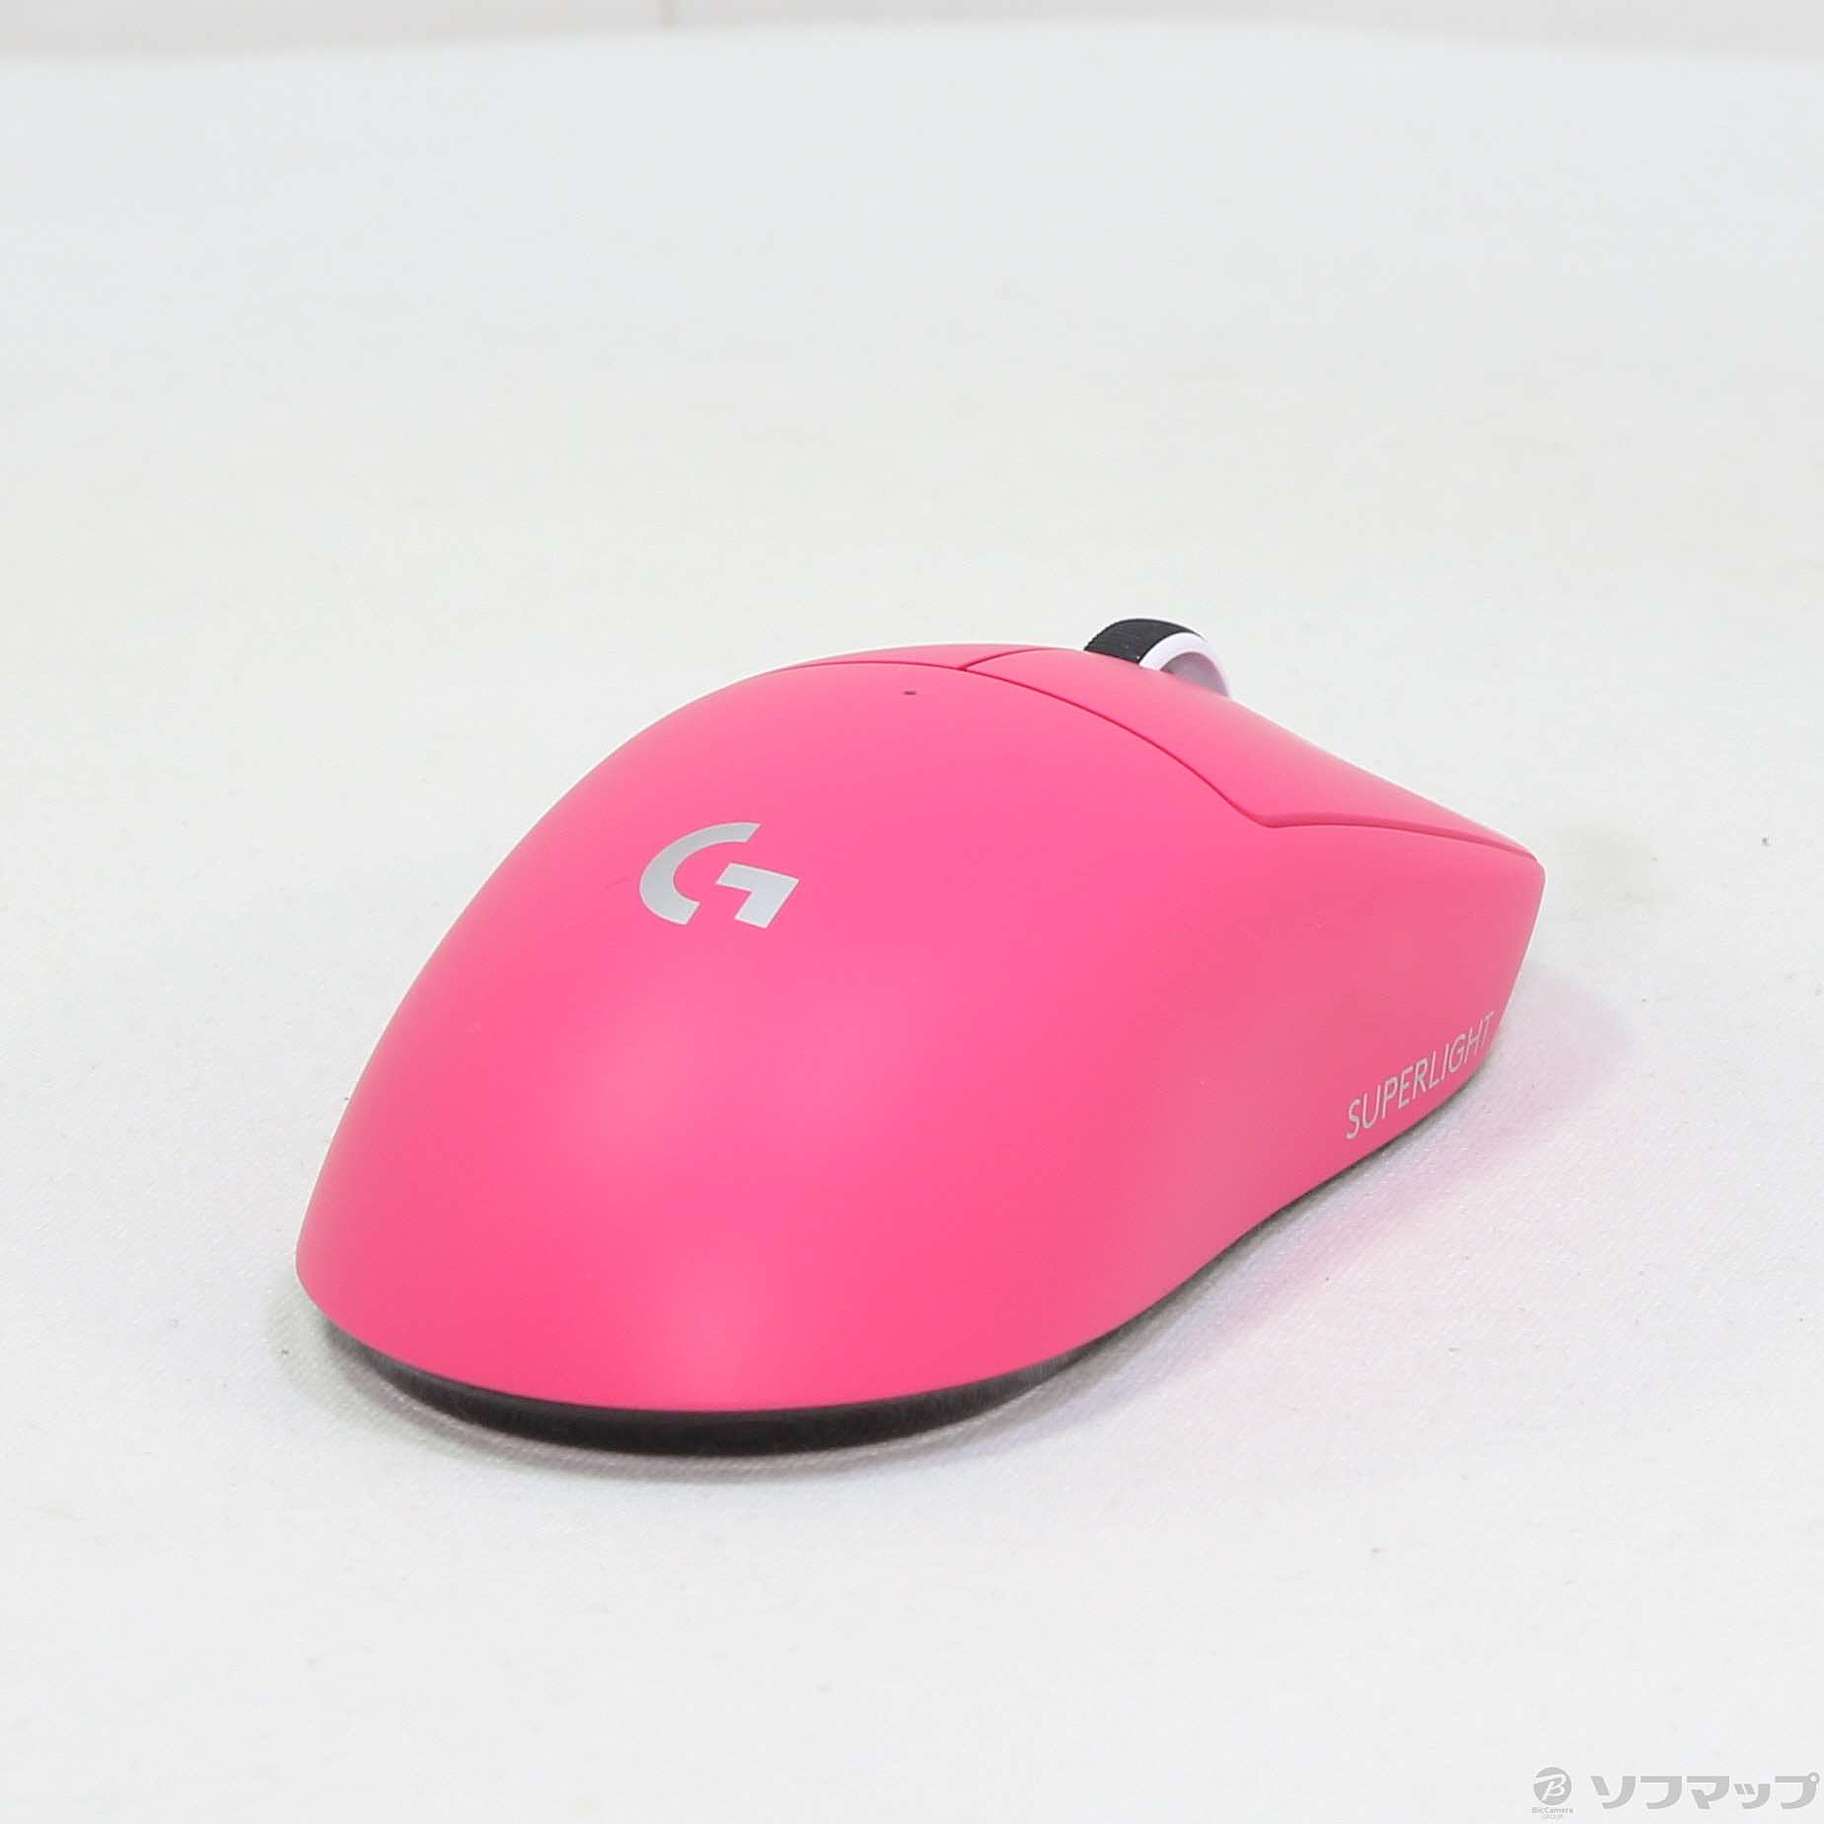 中古】Logicool PRO X SUPERLIGHT Wireless Gaming Mouse マゼンタ G